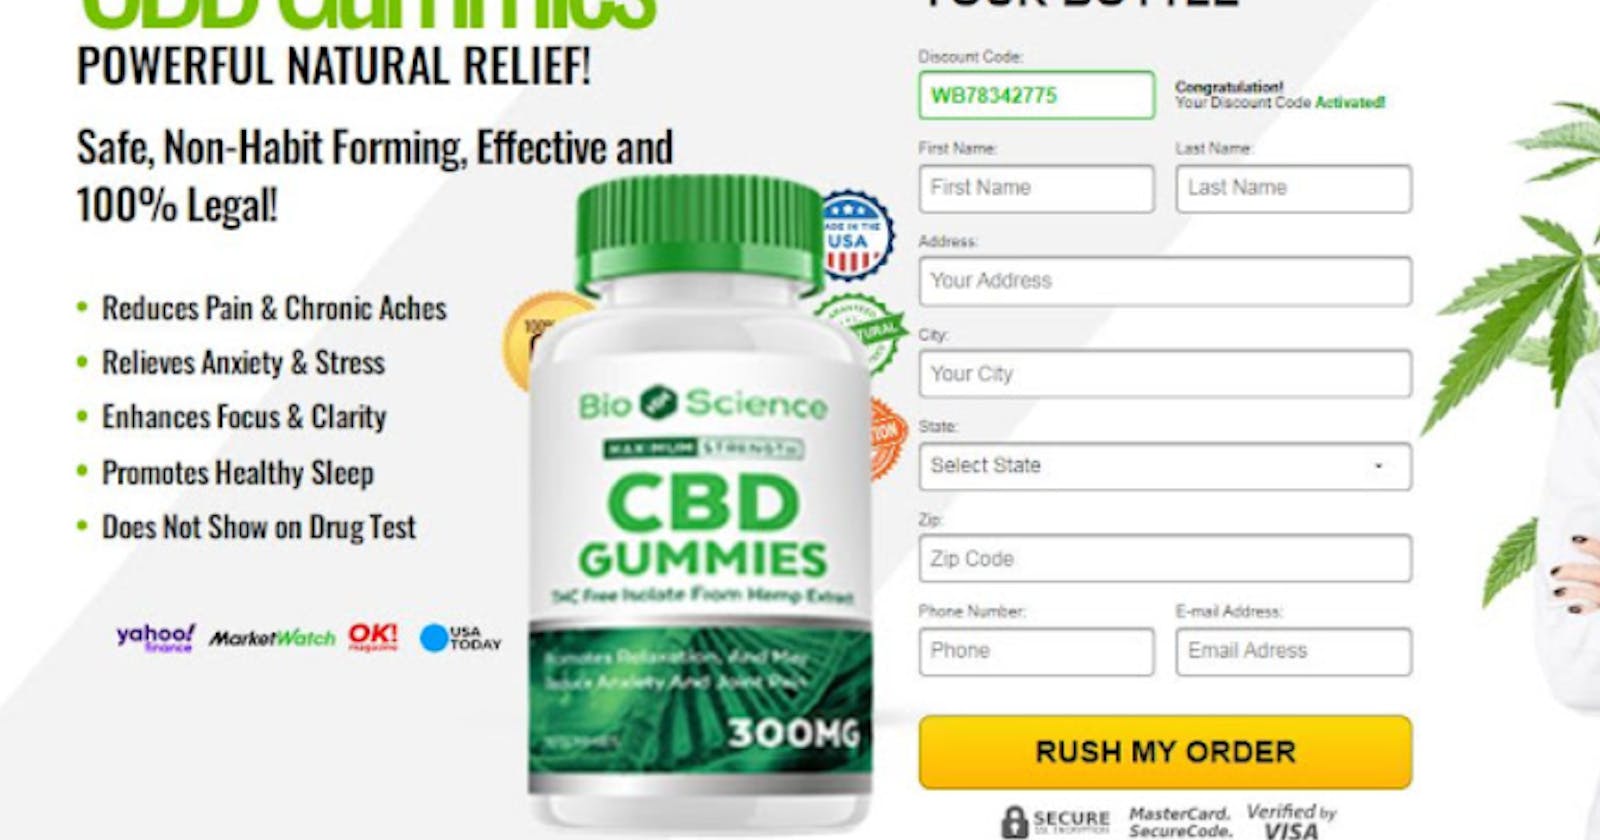 BioScience CBD Gummies Reviews Benefits & 100% Natural!